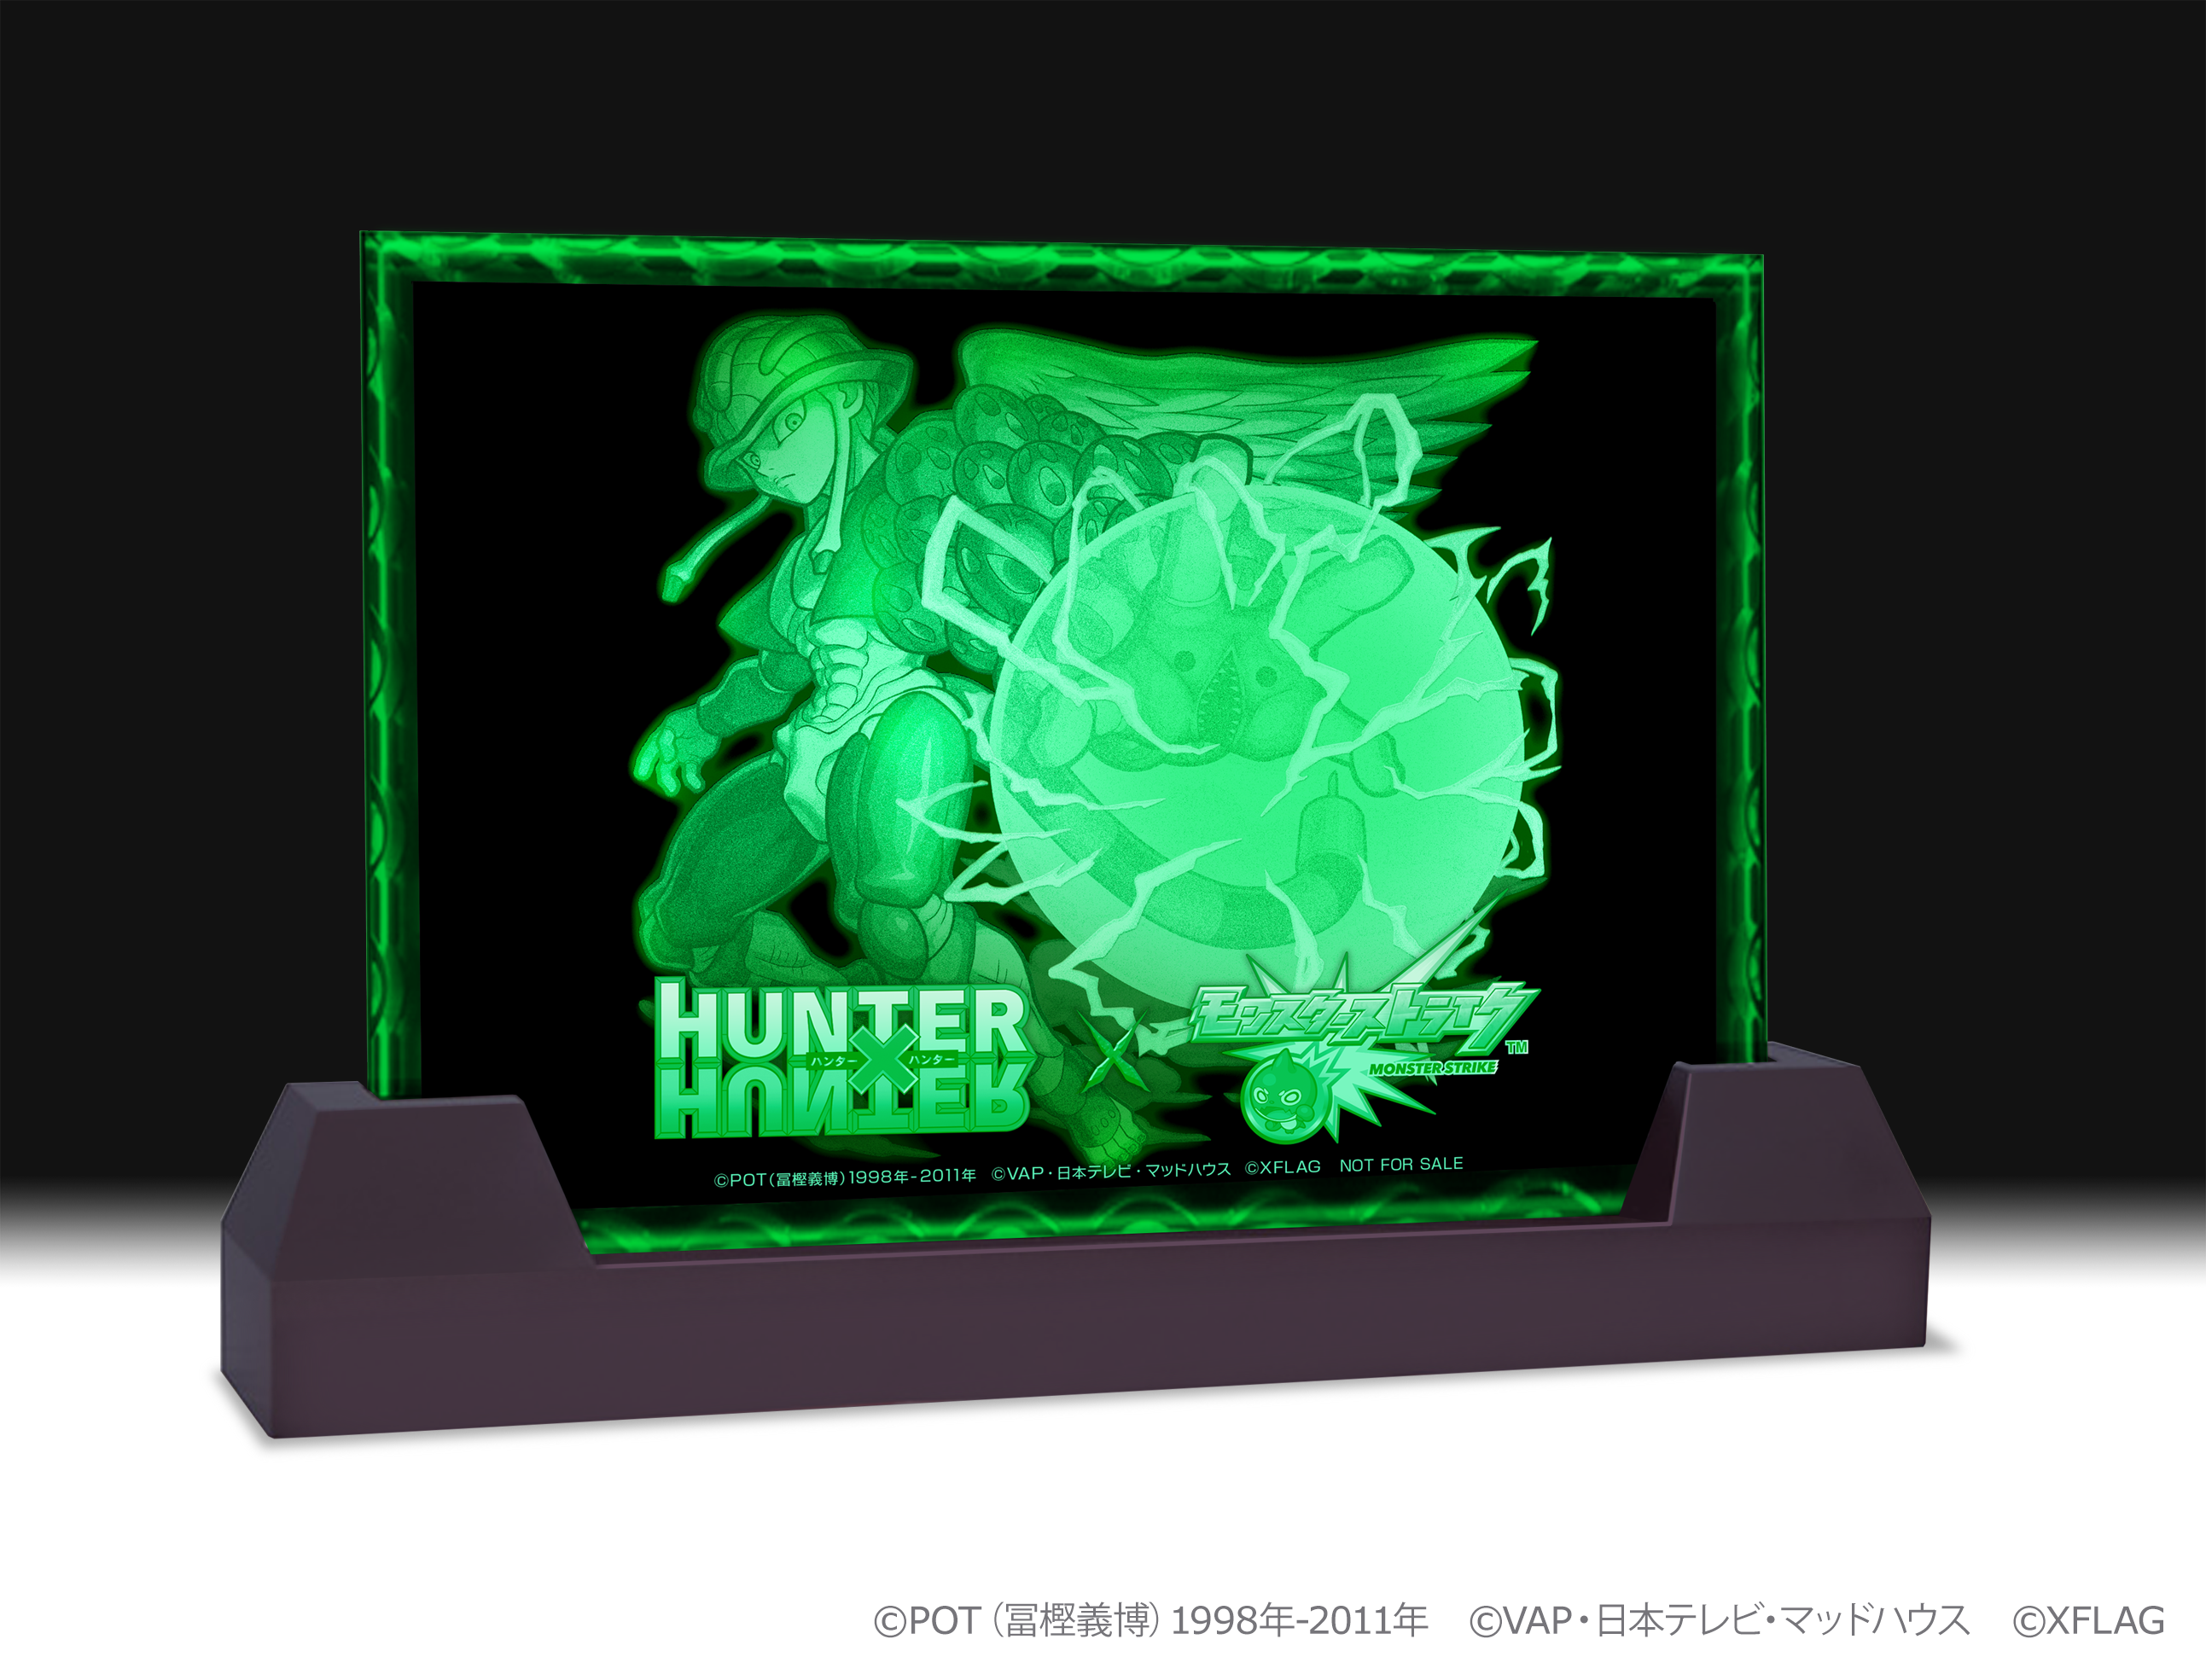 モンストとアニメ Hunter Hunter コラボ第2弾web限定動画公開 Hunter Hunter 名言ドラマ 仕掛けは名言だけじゃない スポーツまとめ スポラボ Spolabo